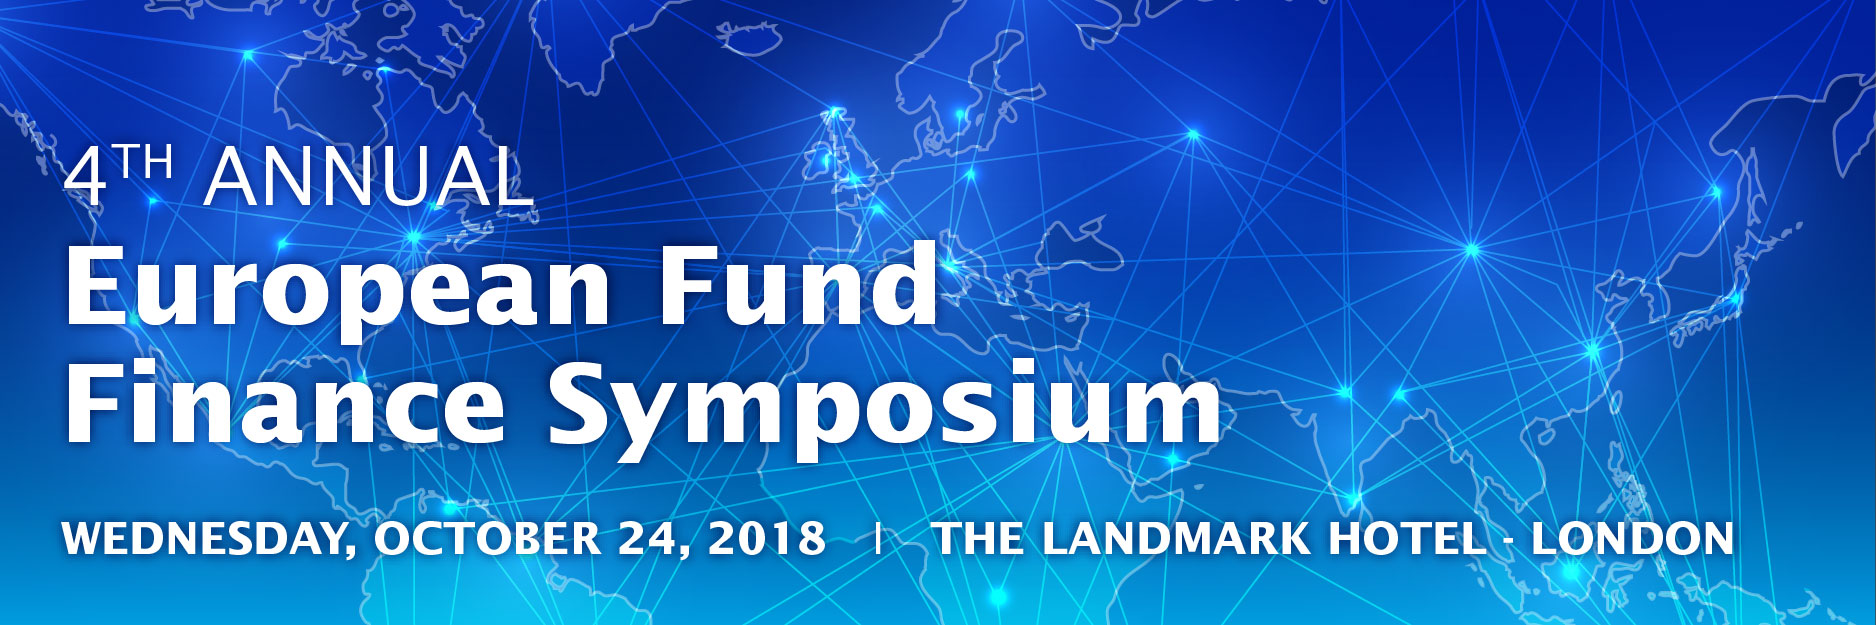 2018 European Fund Finance Symposium